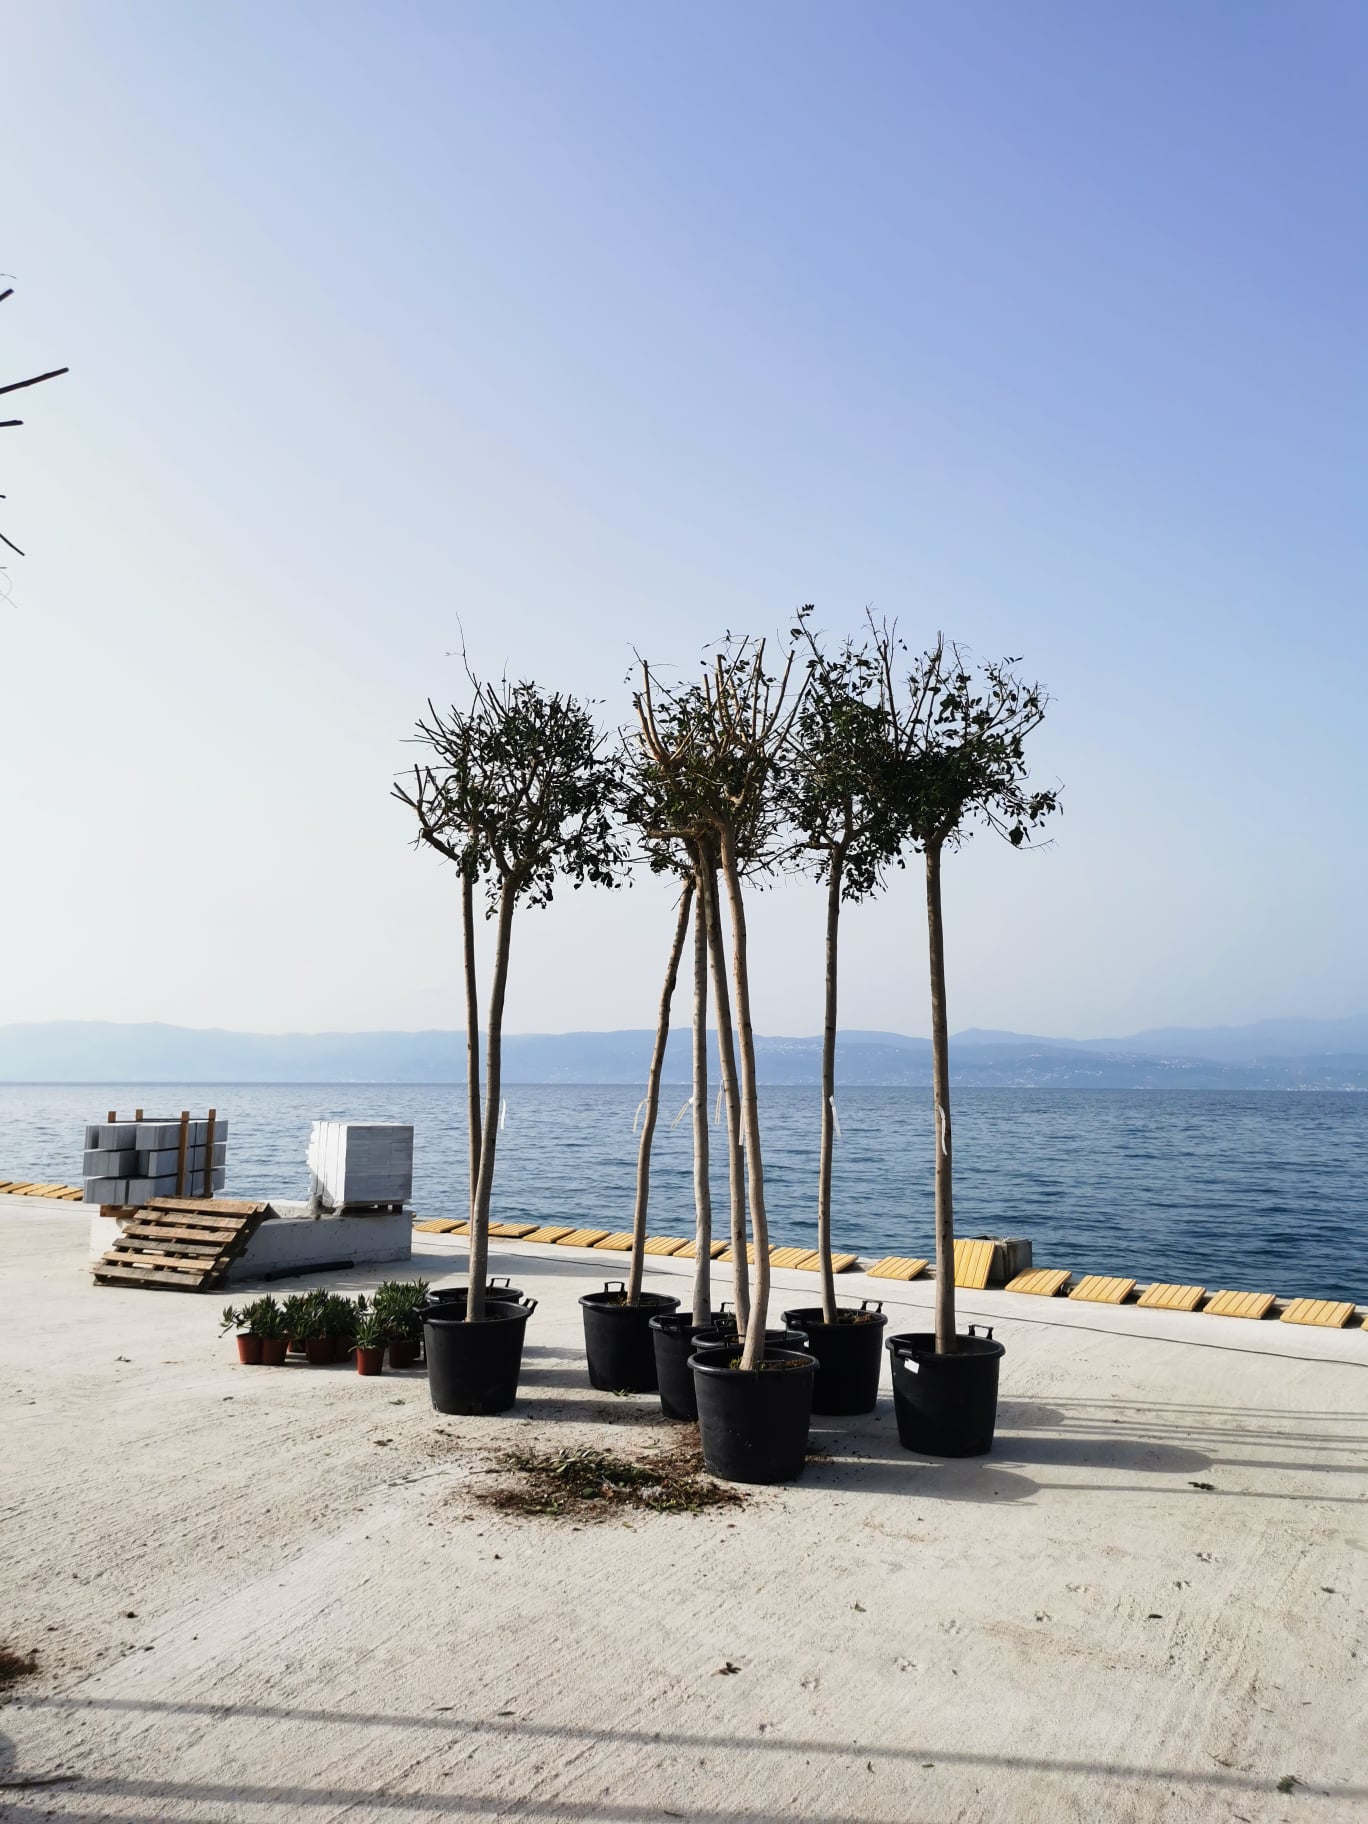 Δήμος Ερέτριας: Ομόρφυνε η παραλία Αμαρύνθου (pics)